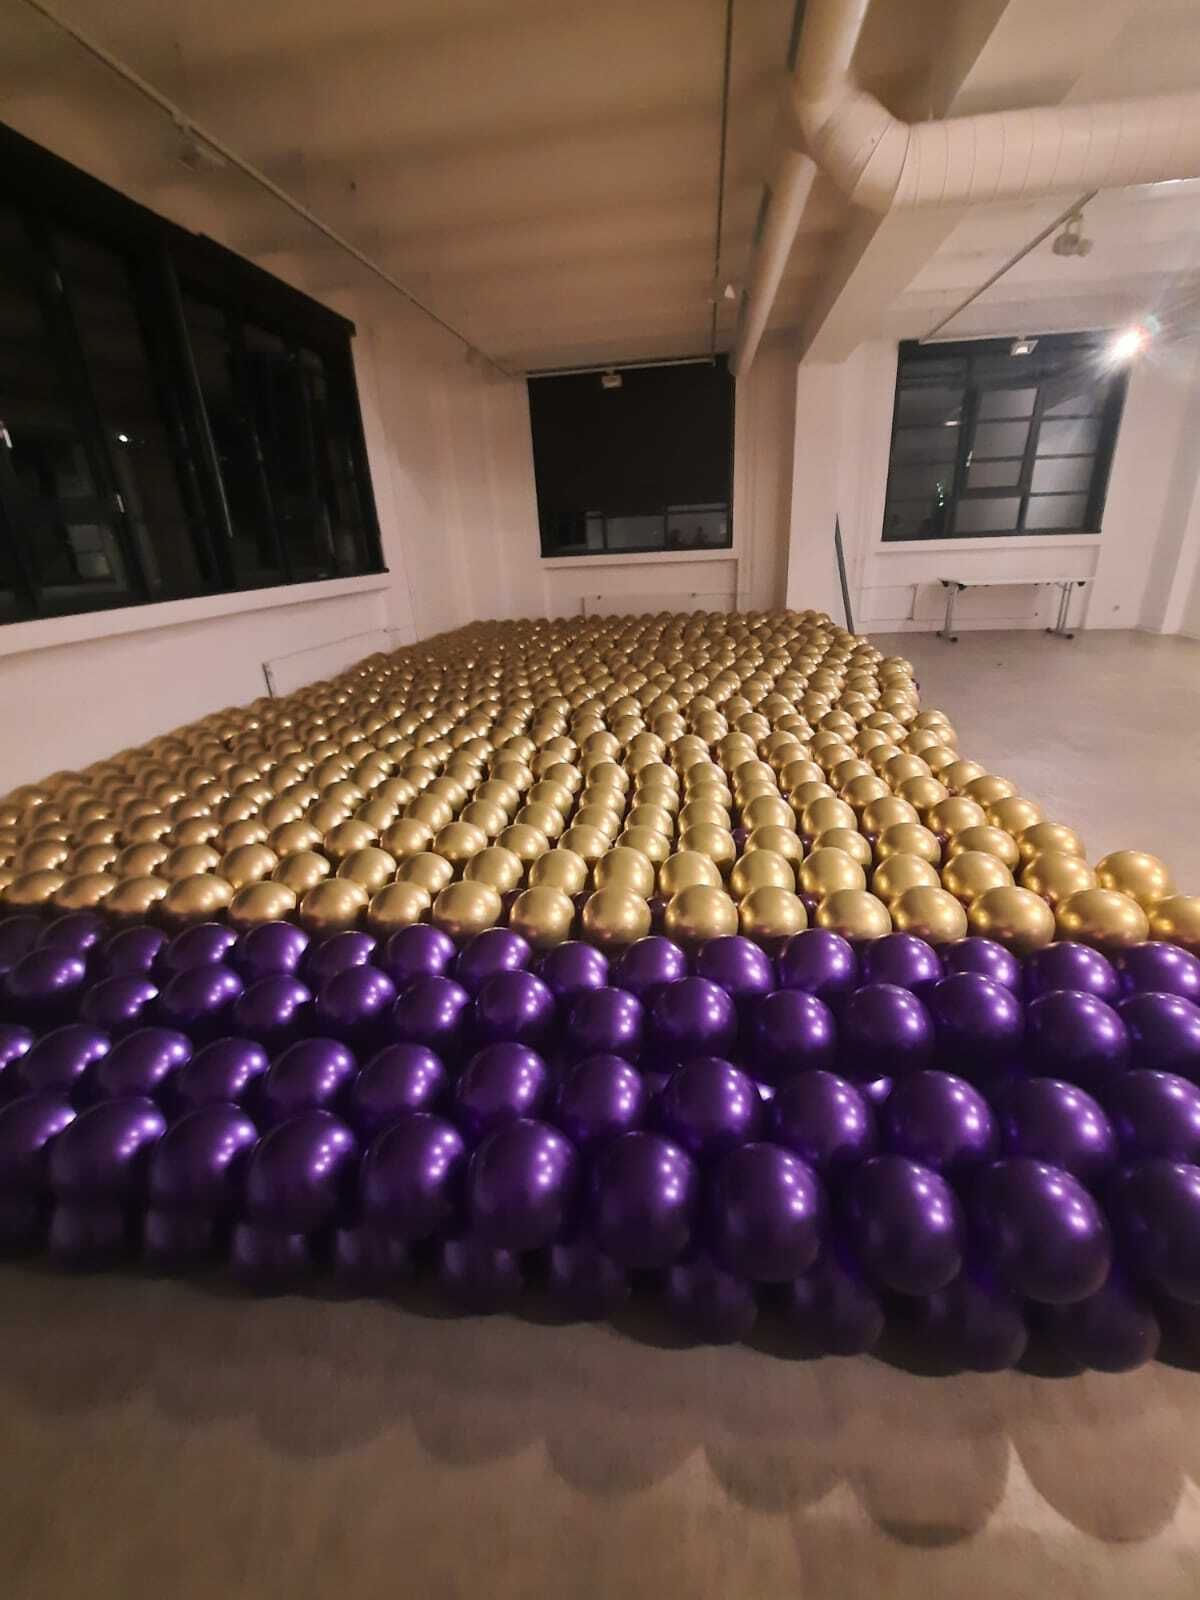 Ballongirlanden liegen fertig zum Anbringen bereit